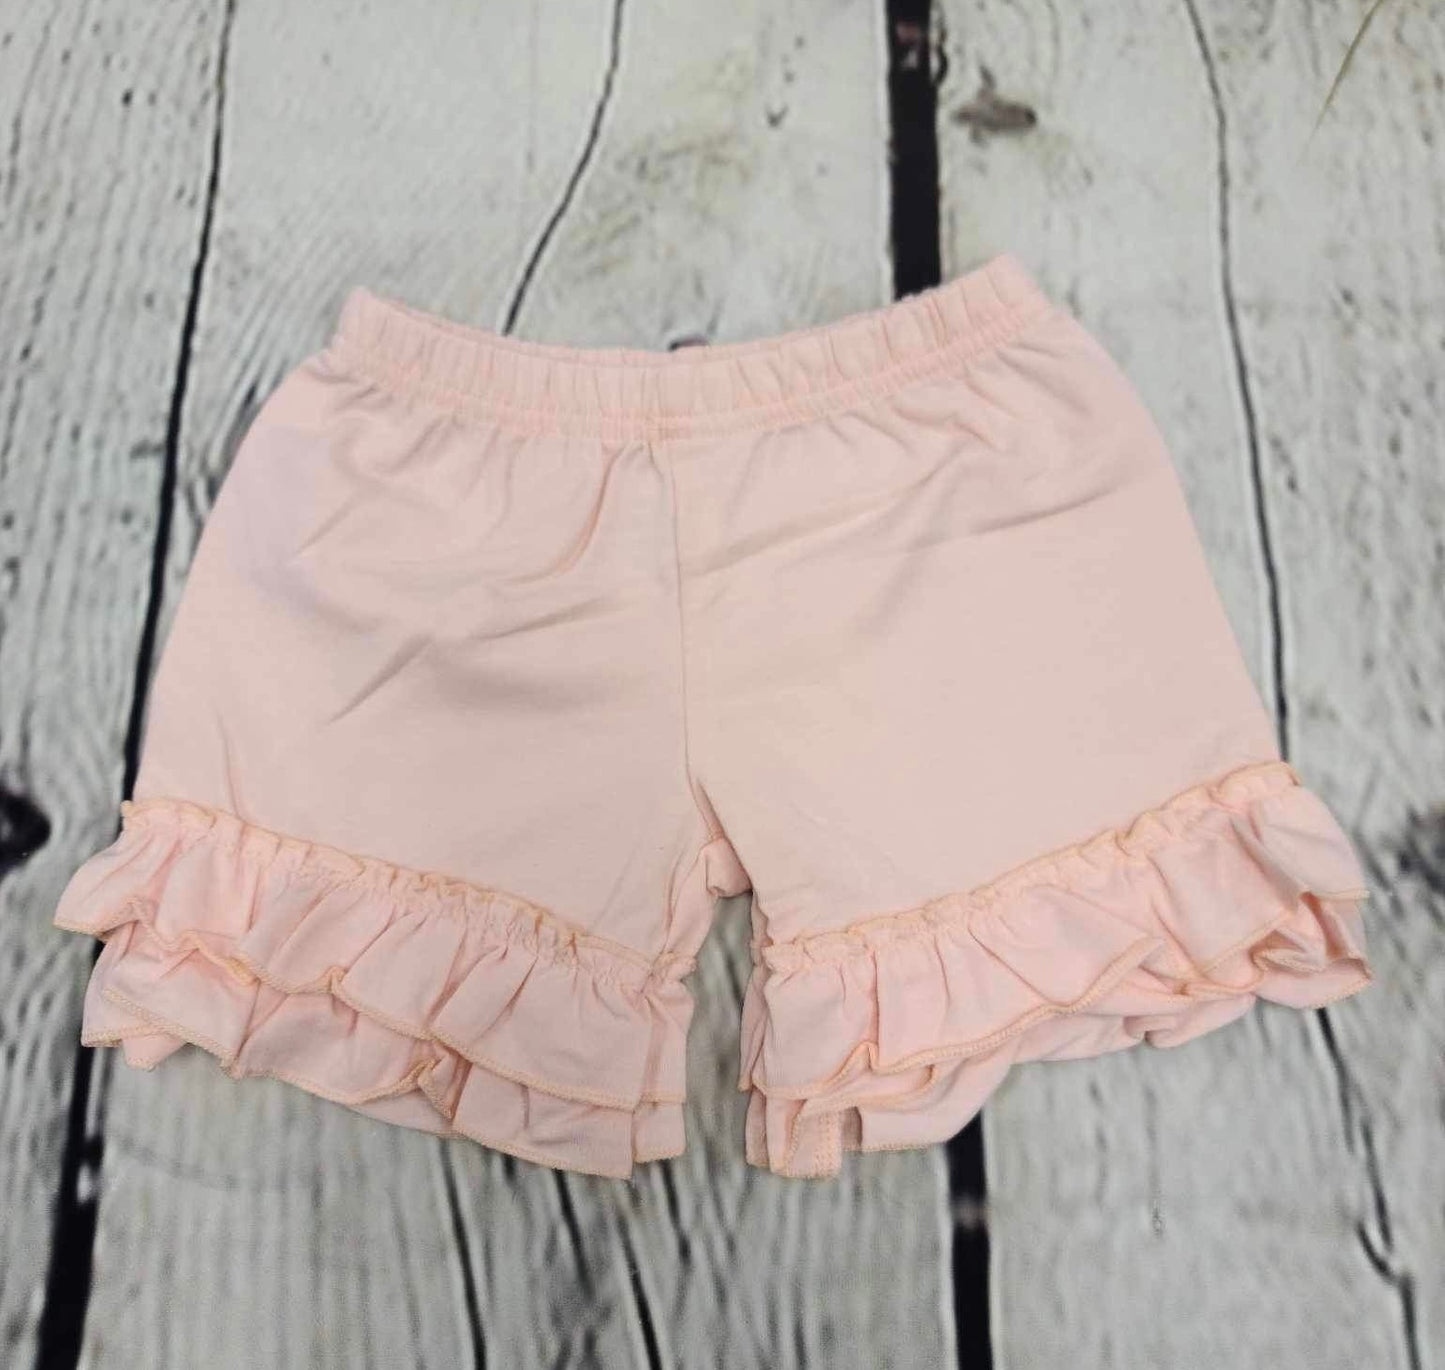 Ruffled pink shorts